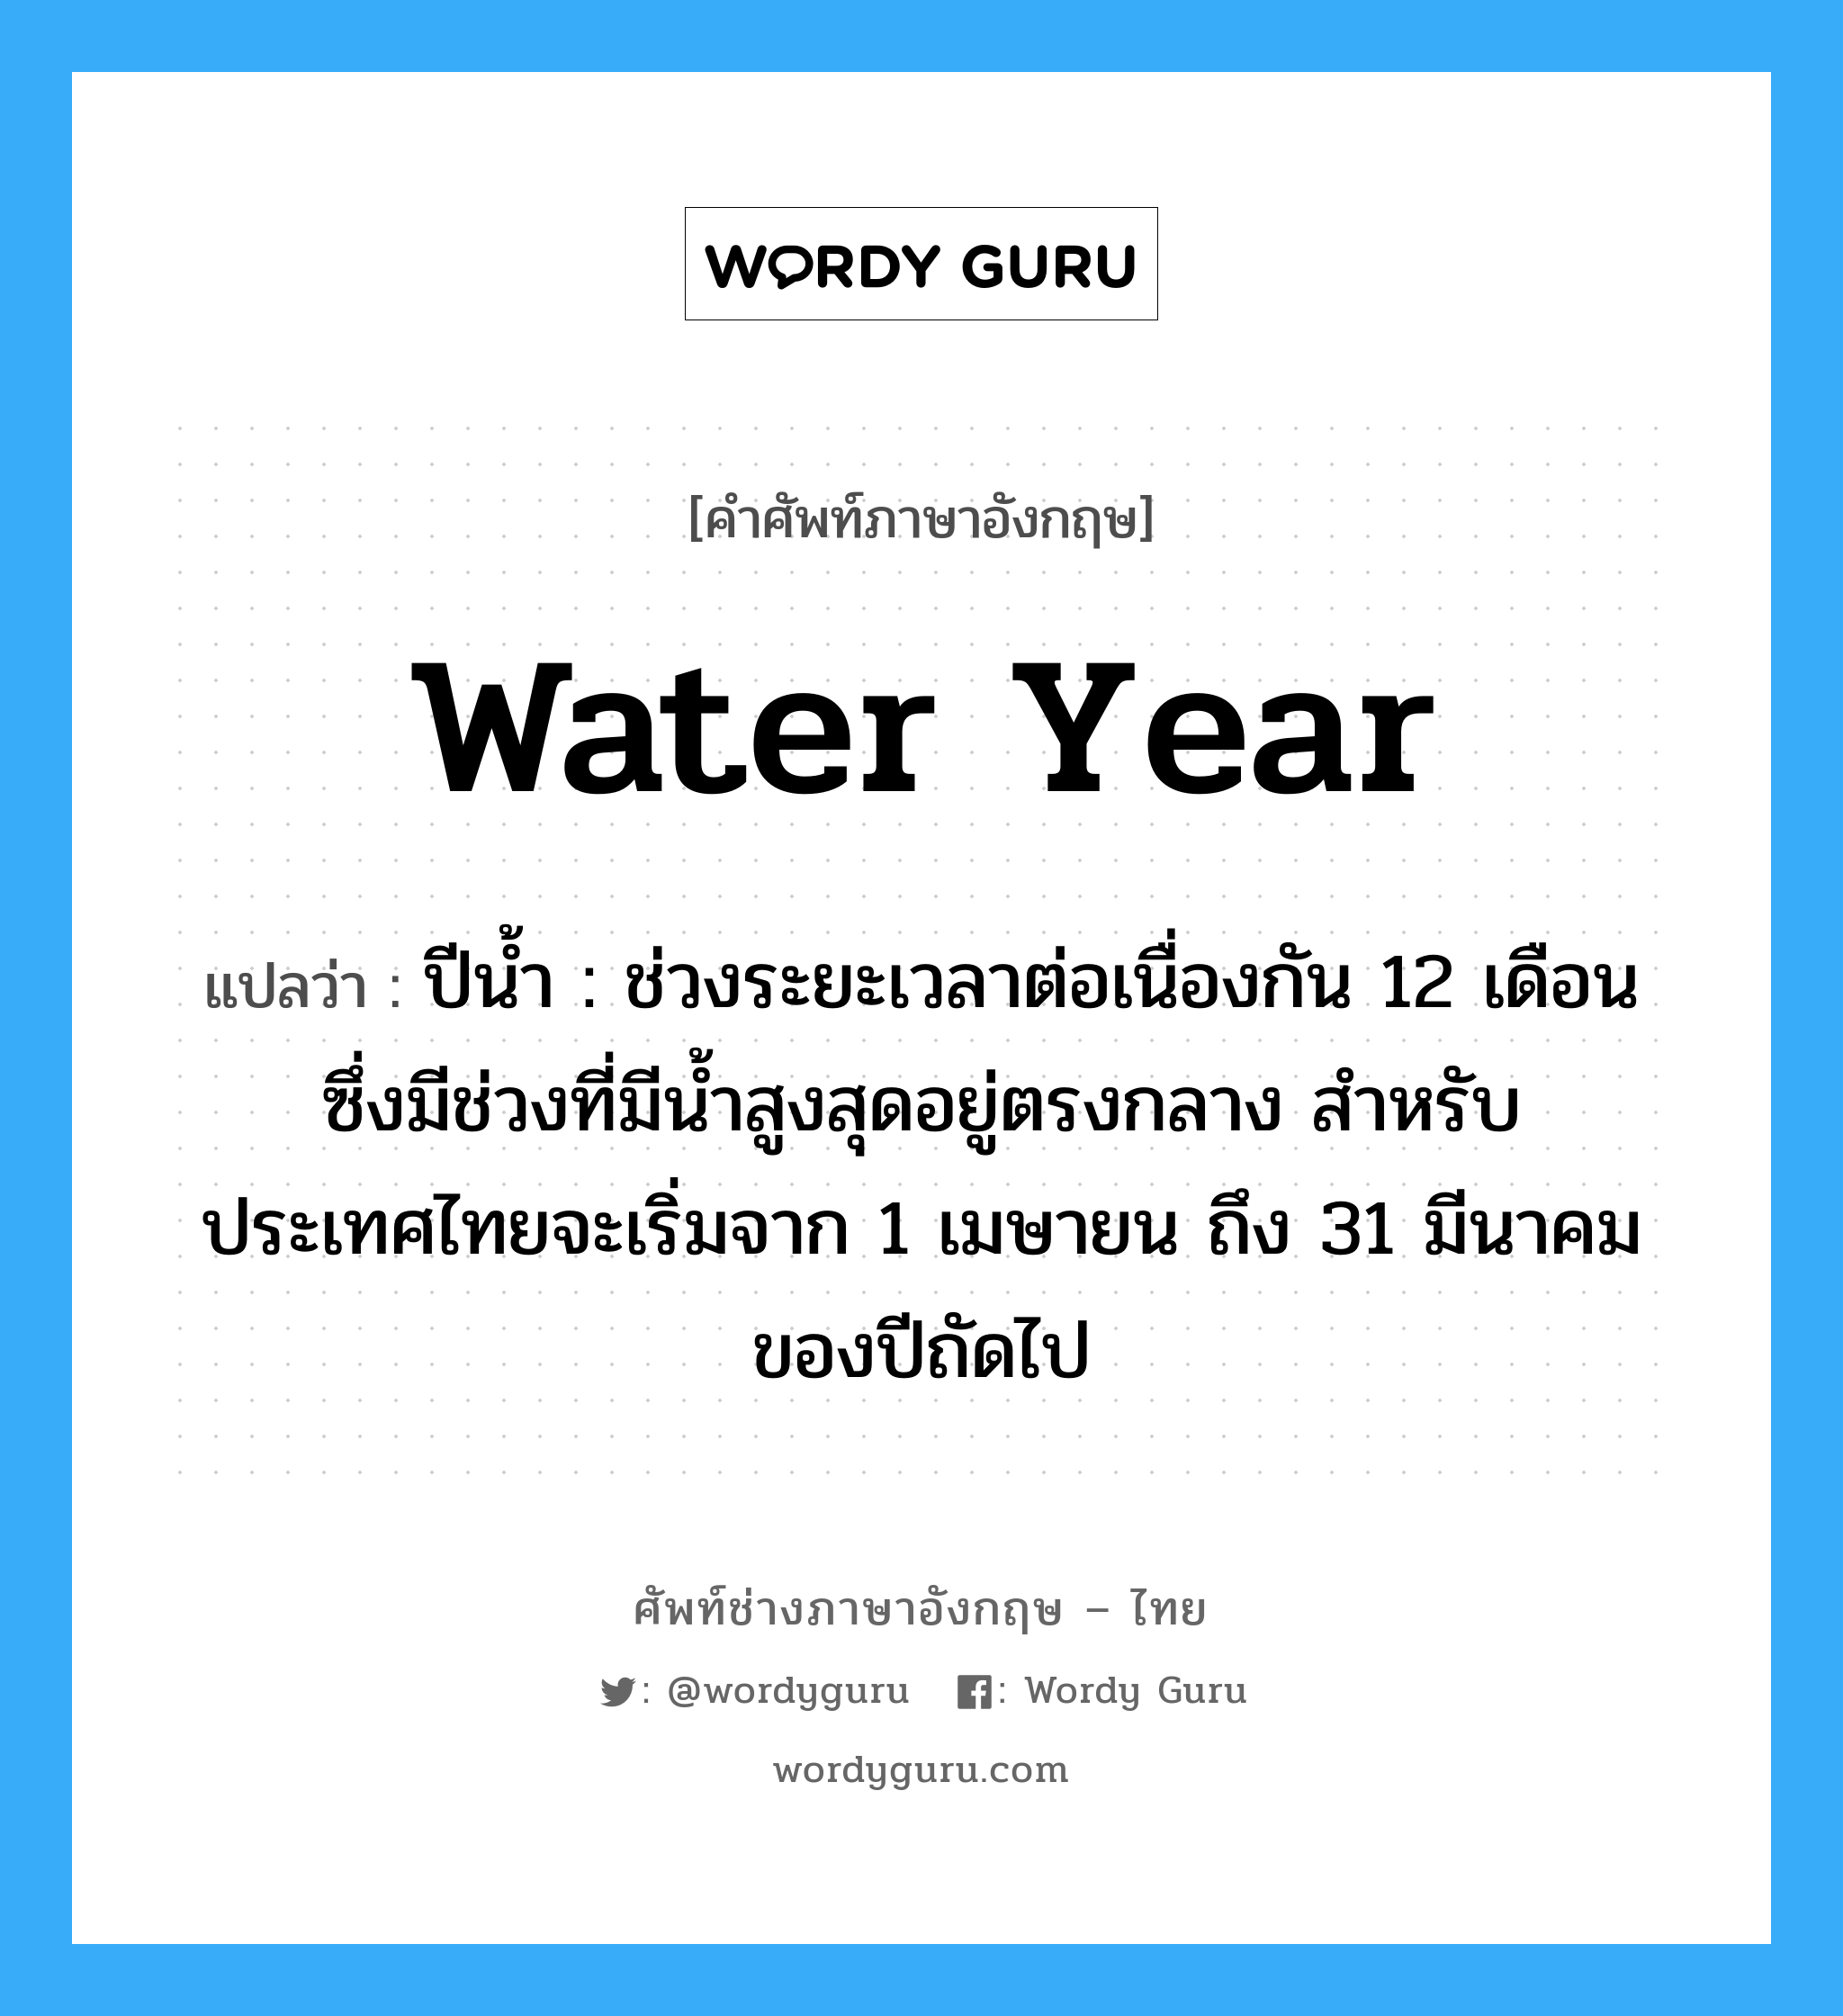 water year แปลว่า?, คำศัพท์ช่างภาษาอังกฤษ - ไทย water year คำศัพท์ภาษาอังกฤษ water year แปลว่า ปีน้ำ : ช่วงระยะเวลาต่อเนื่องกัน 12 เดือน ซึ่งมีช่วงที่มีน้ำสูงสุดอยู่ตรงกลาง สำหรับประเทศไทยจะเริ่มจาก 1 เมษายน ถึง 31 มีนาคมของปีถัดไป